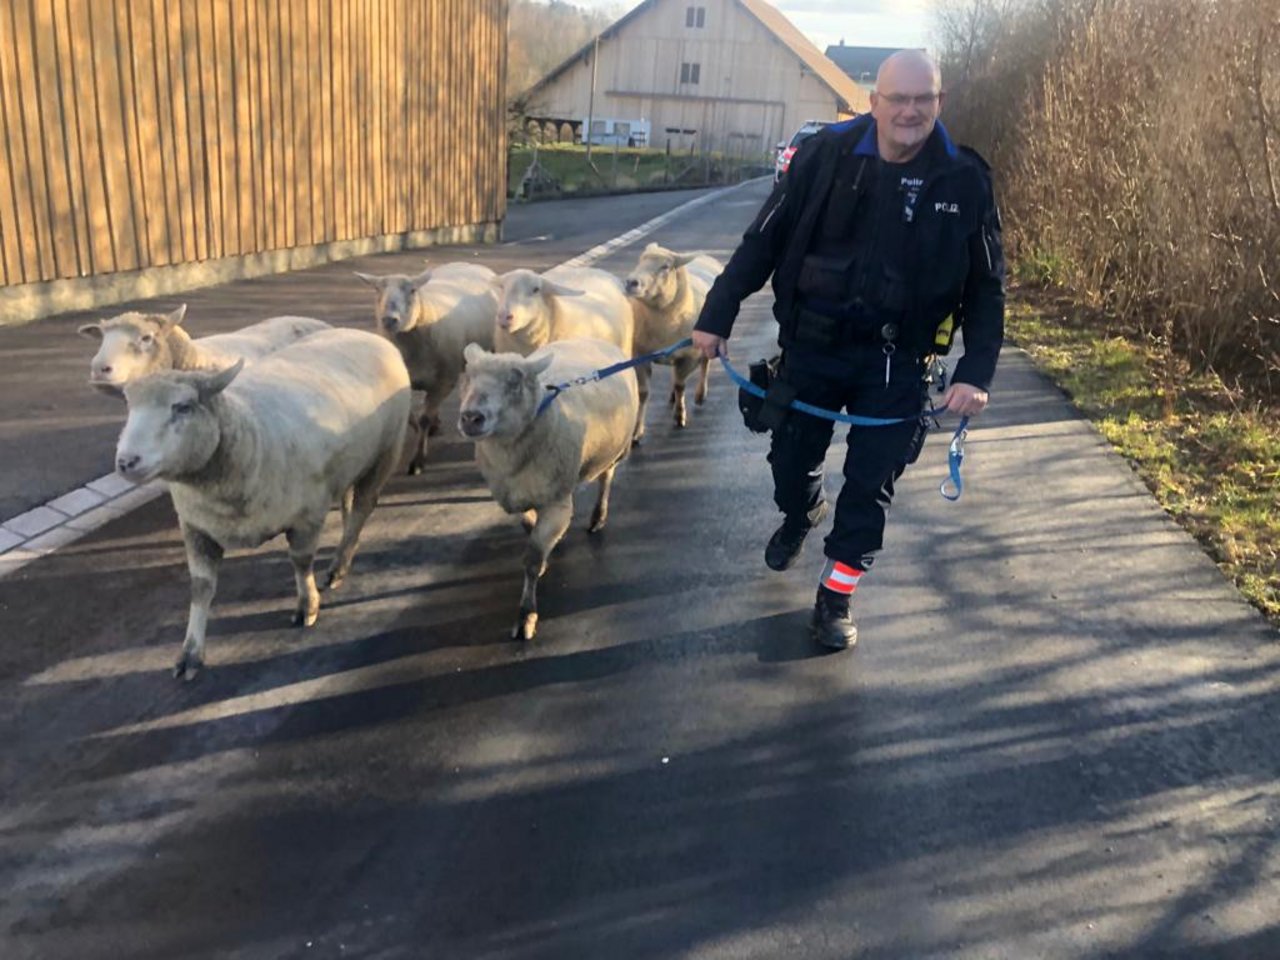 Kurze Geschichte, schönes Bild: Hier werden die augebüxten Schafe wieder auf ihre Weide geführt. (Bild Facebook/ Polizei Adliswil-Langnau am Albis)